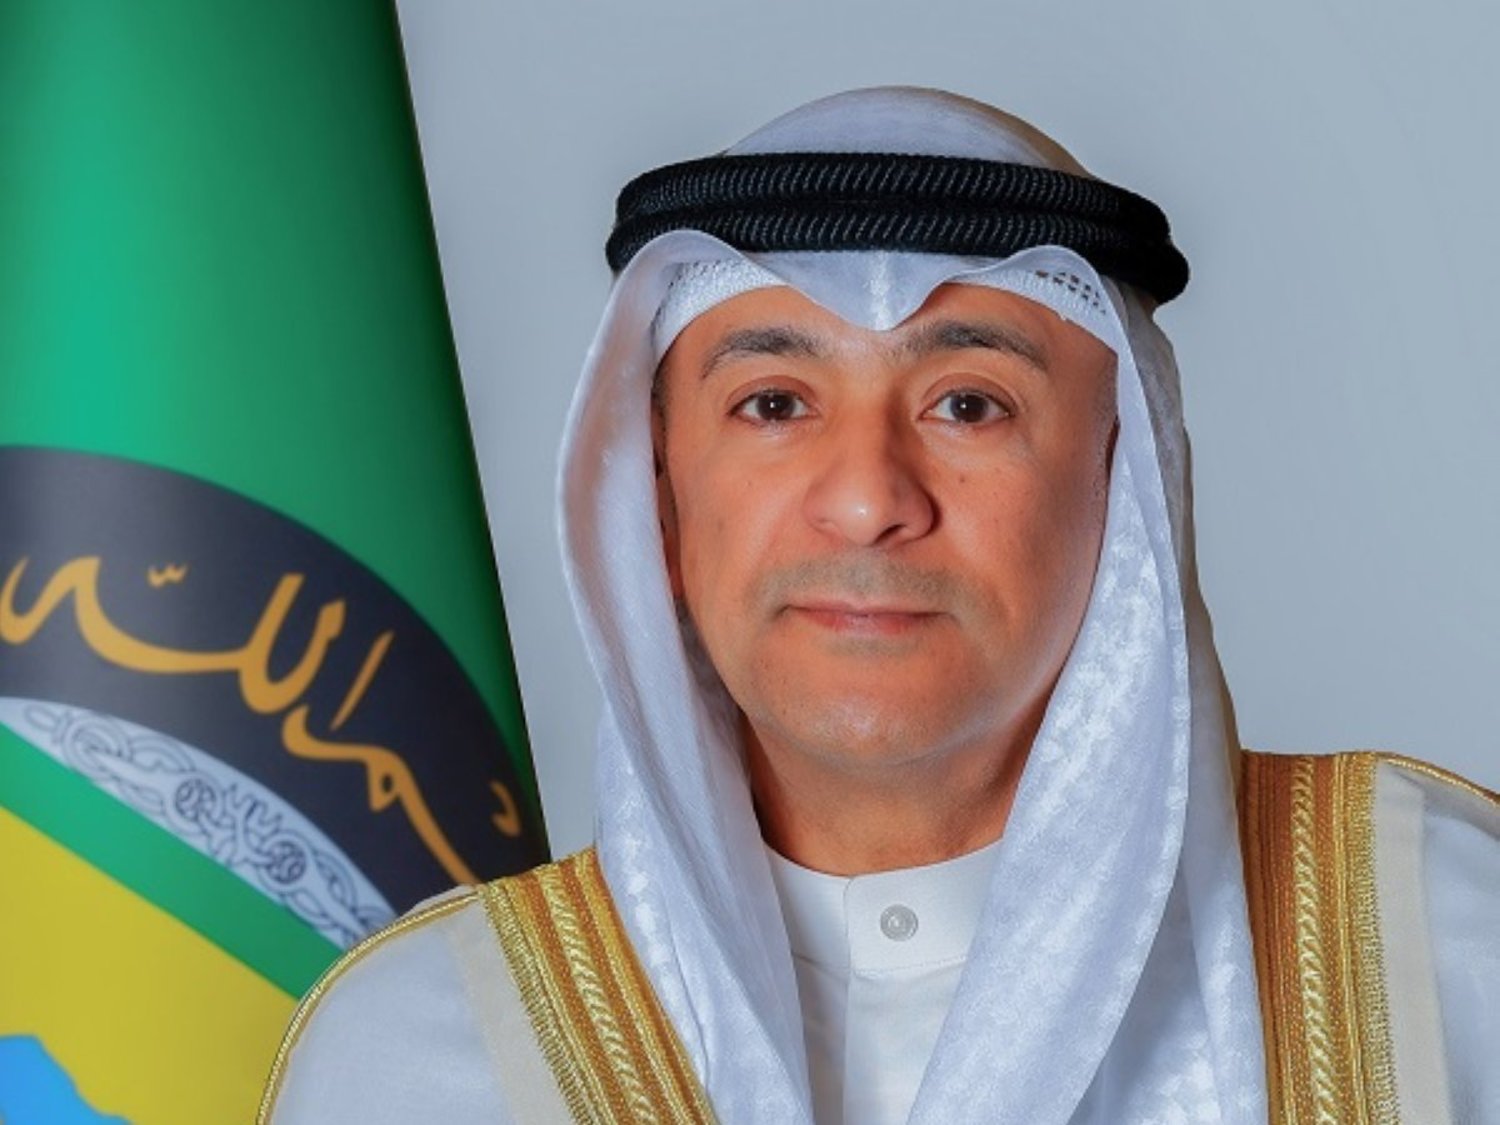 مجلس التعاون الخليجي يثني على جهود الإمارات تجاه غزة في مجلس الأمن